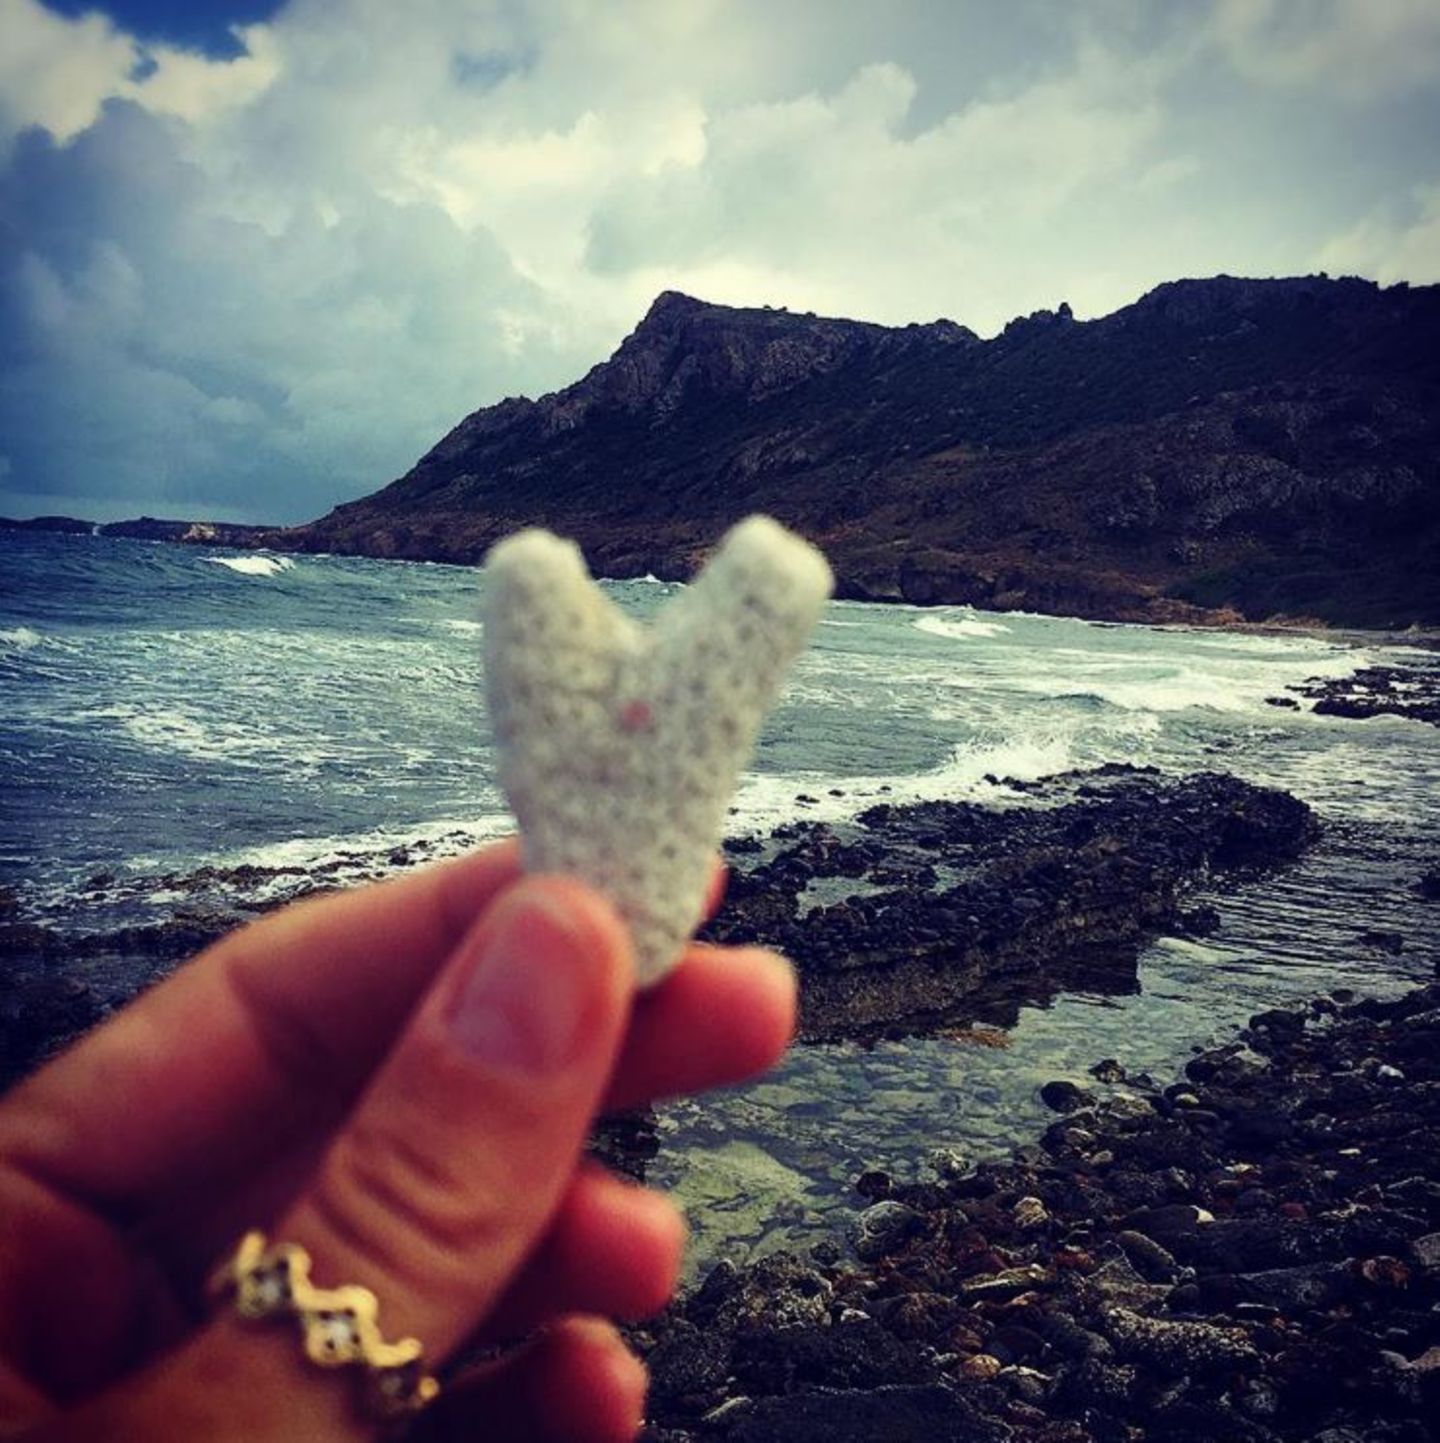 7. August 2017  Süßer Gruß aus dem Liebesurlaub mit ihrem Vito? Am Strand hat Heidi Klum einen Stein in Herzform gefunden und hält ihn vor die Kamera.